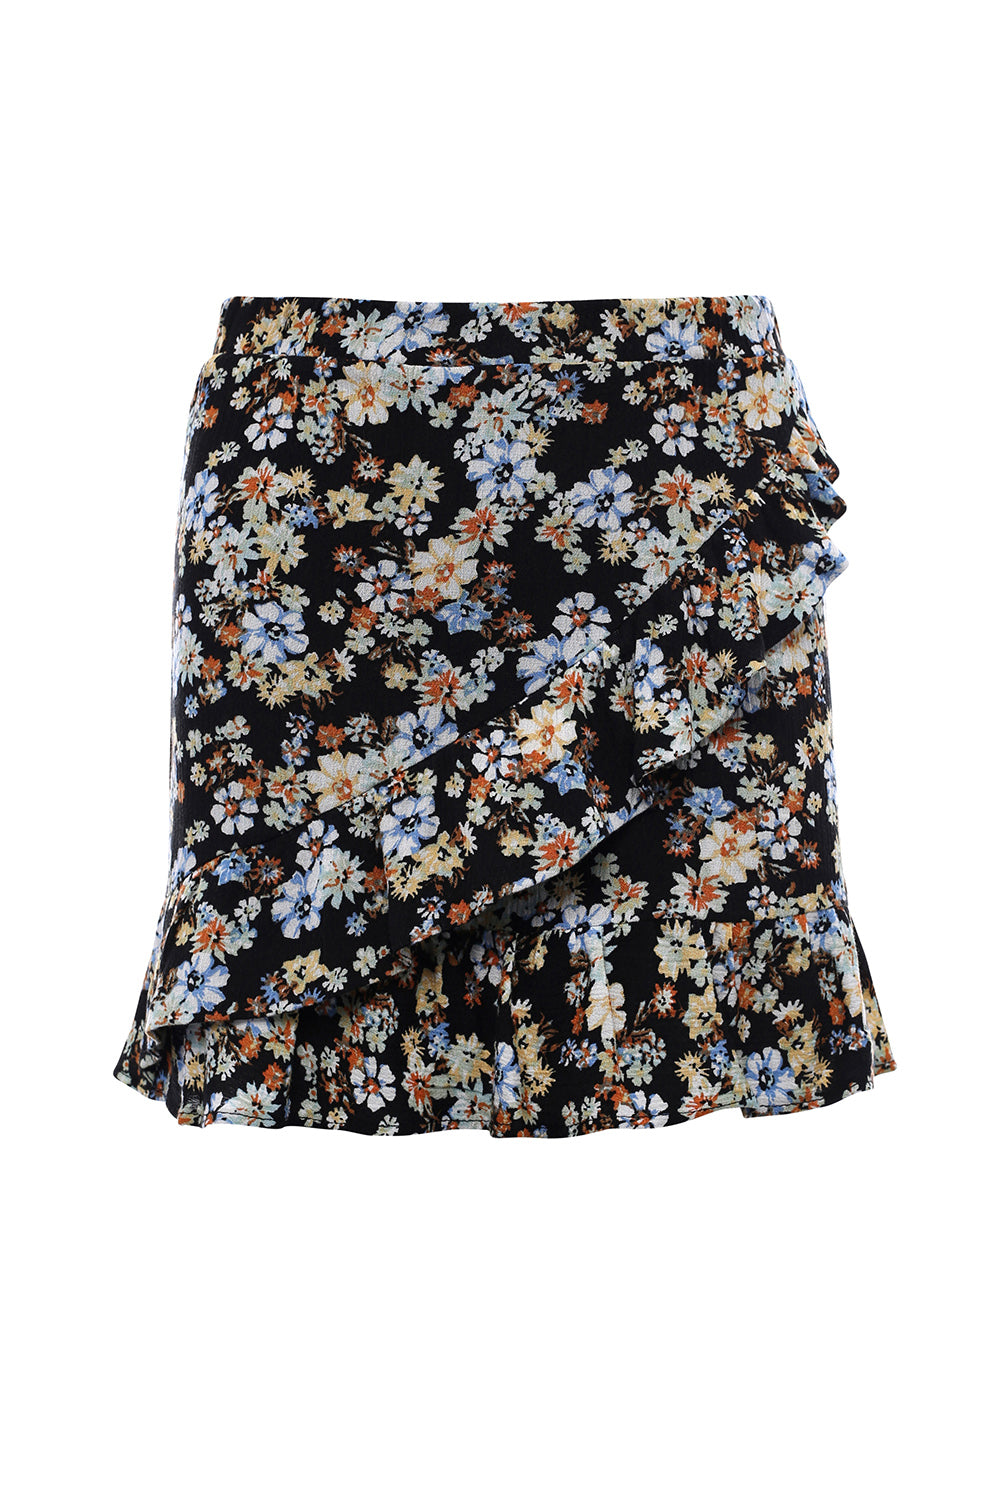 LOOXS 10sixteen Flower Skirt